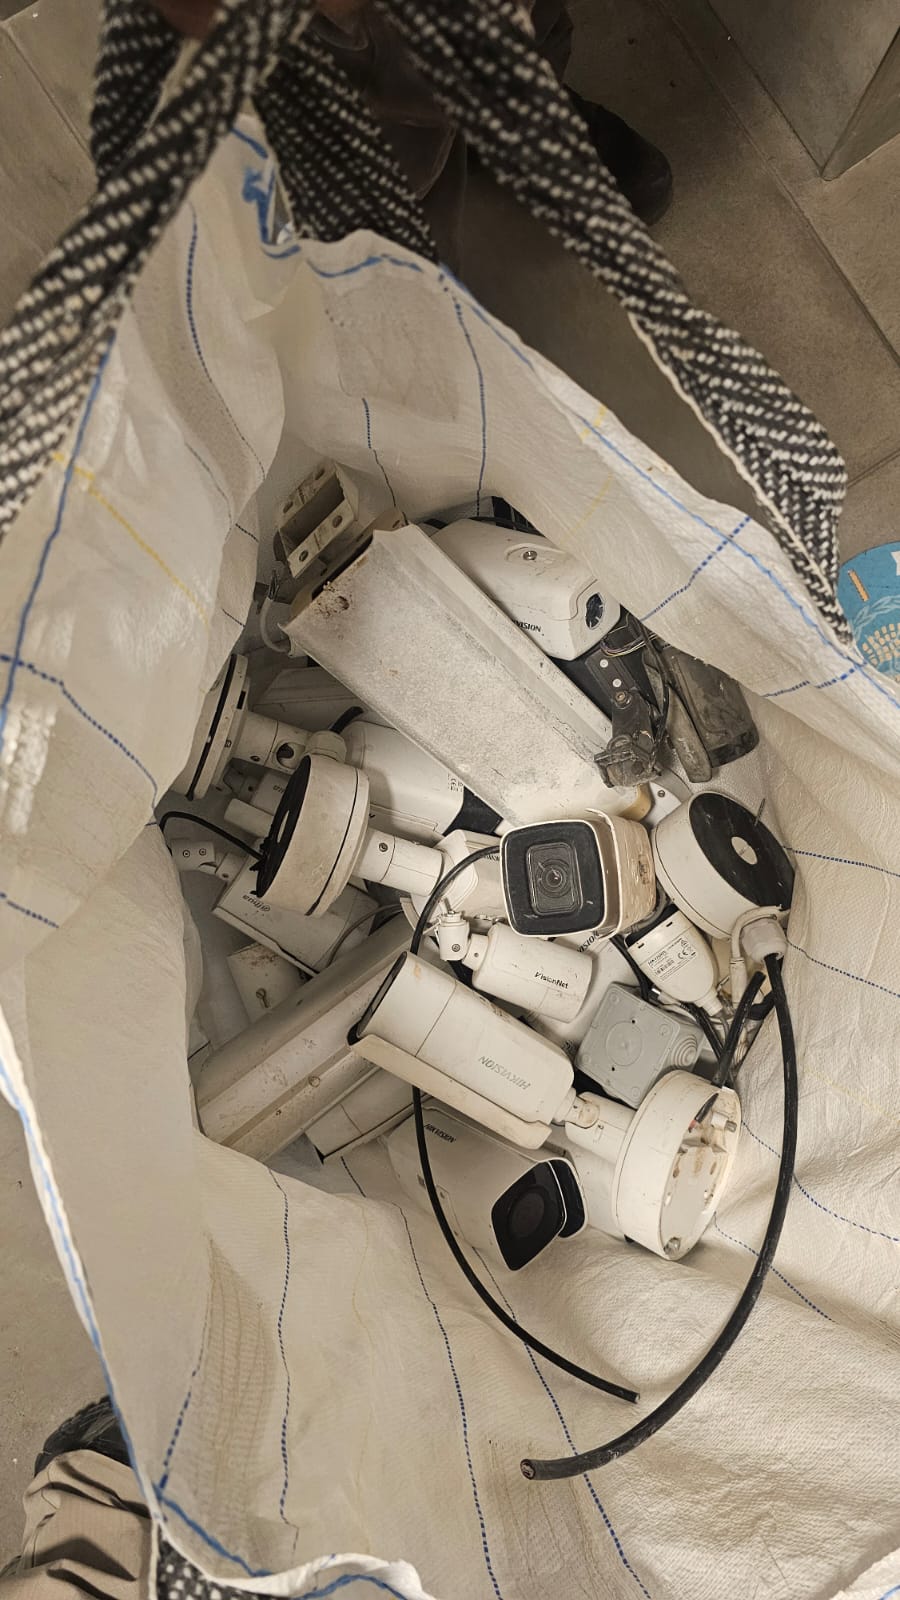 إزالة 24 كاميرا تم وضعها في مجمعات.في كفر ياسيف والجديدة المكر